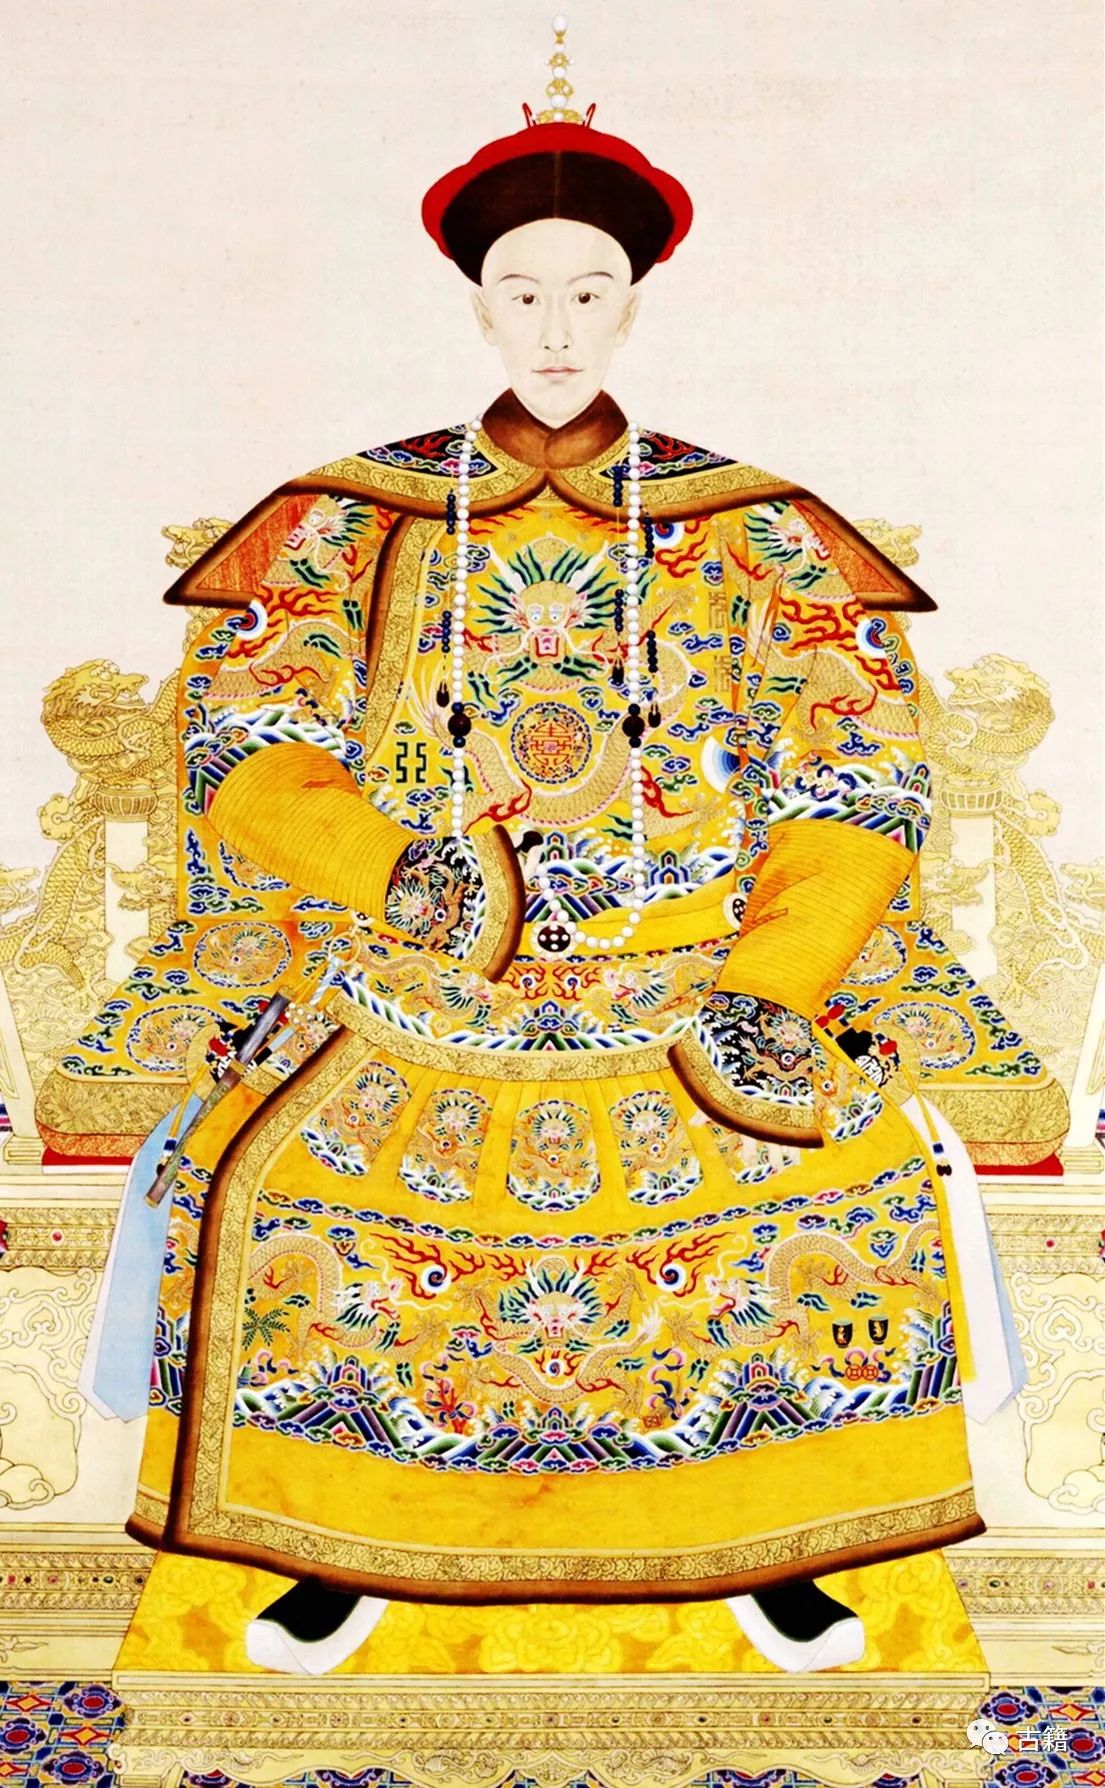 明朝和清朝历代皇帝画像,谁最有帝王之相?